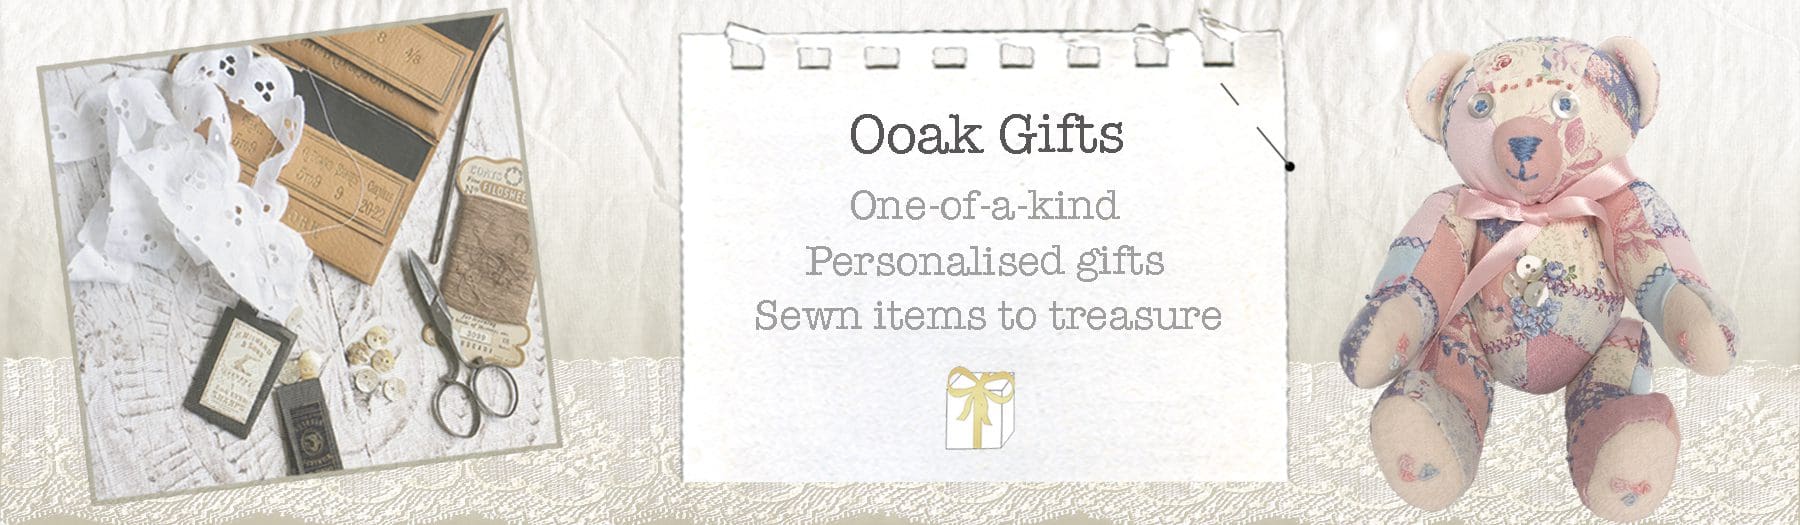 Ooak Gifts